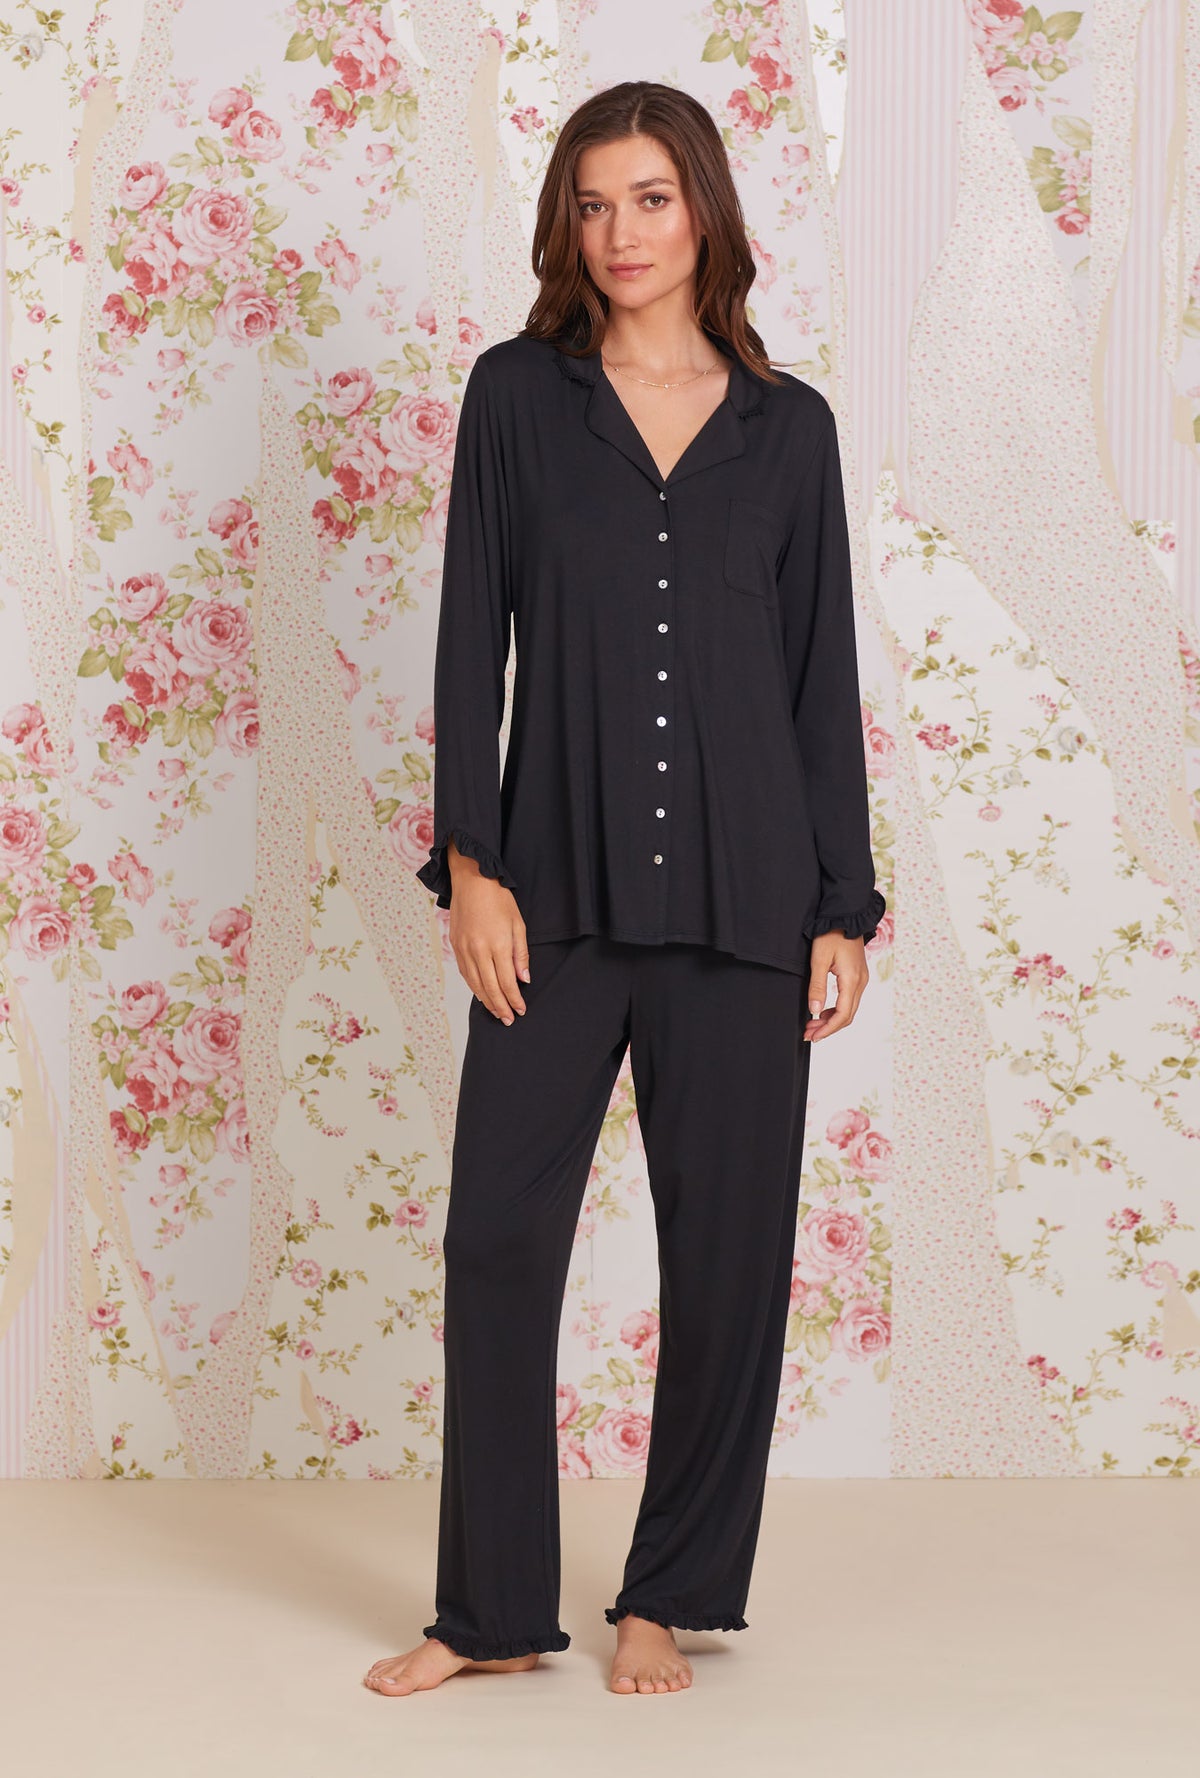 Iconic Black Tencel™ Modal Classic Notch Pajama - Eileen West